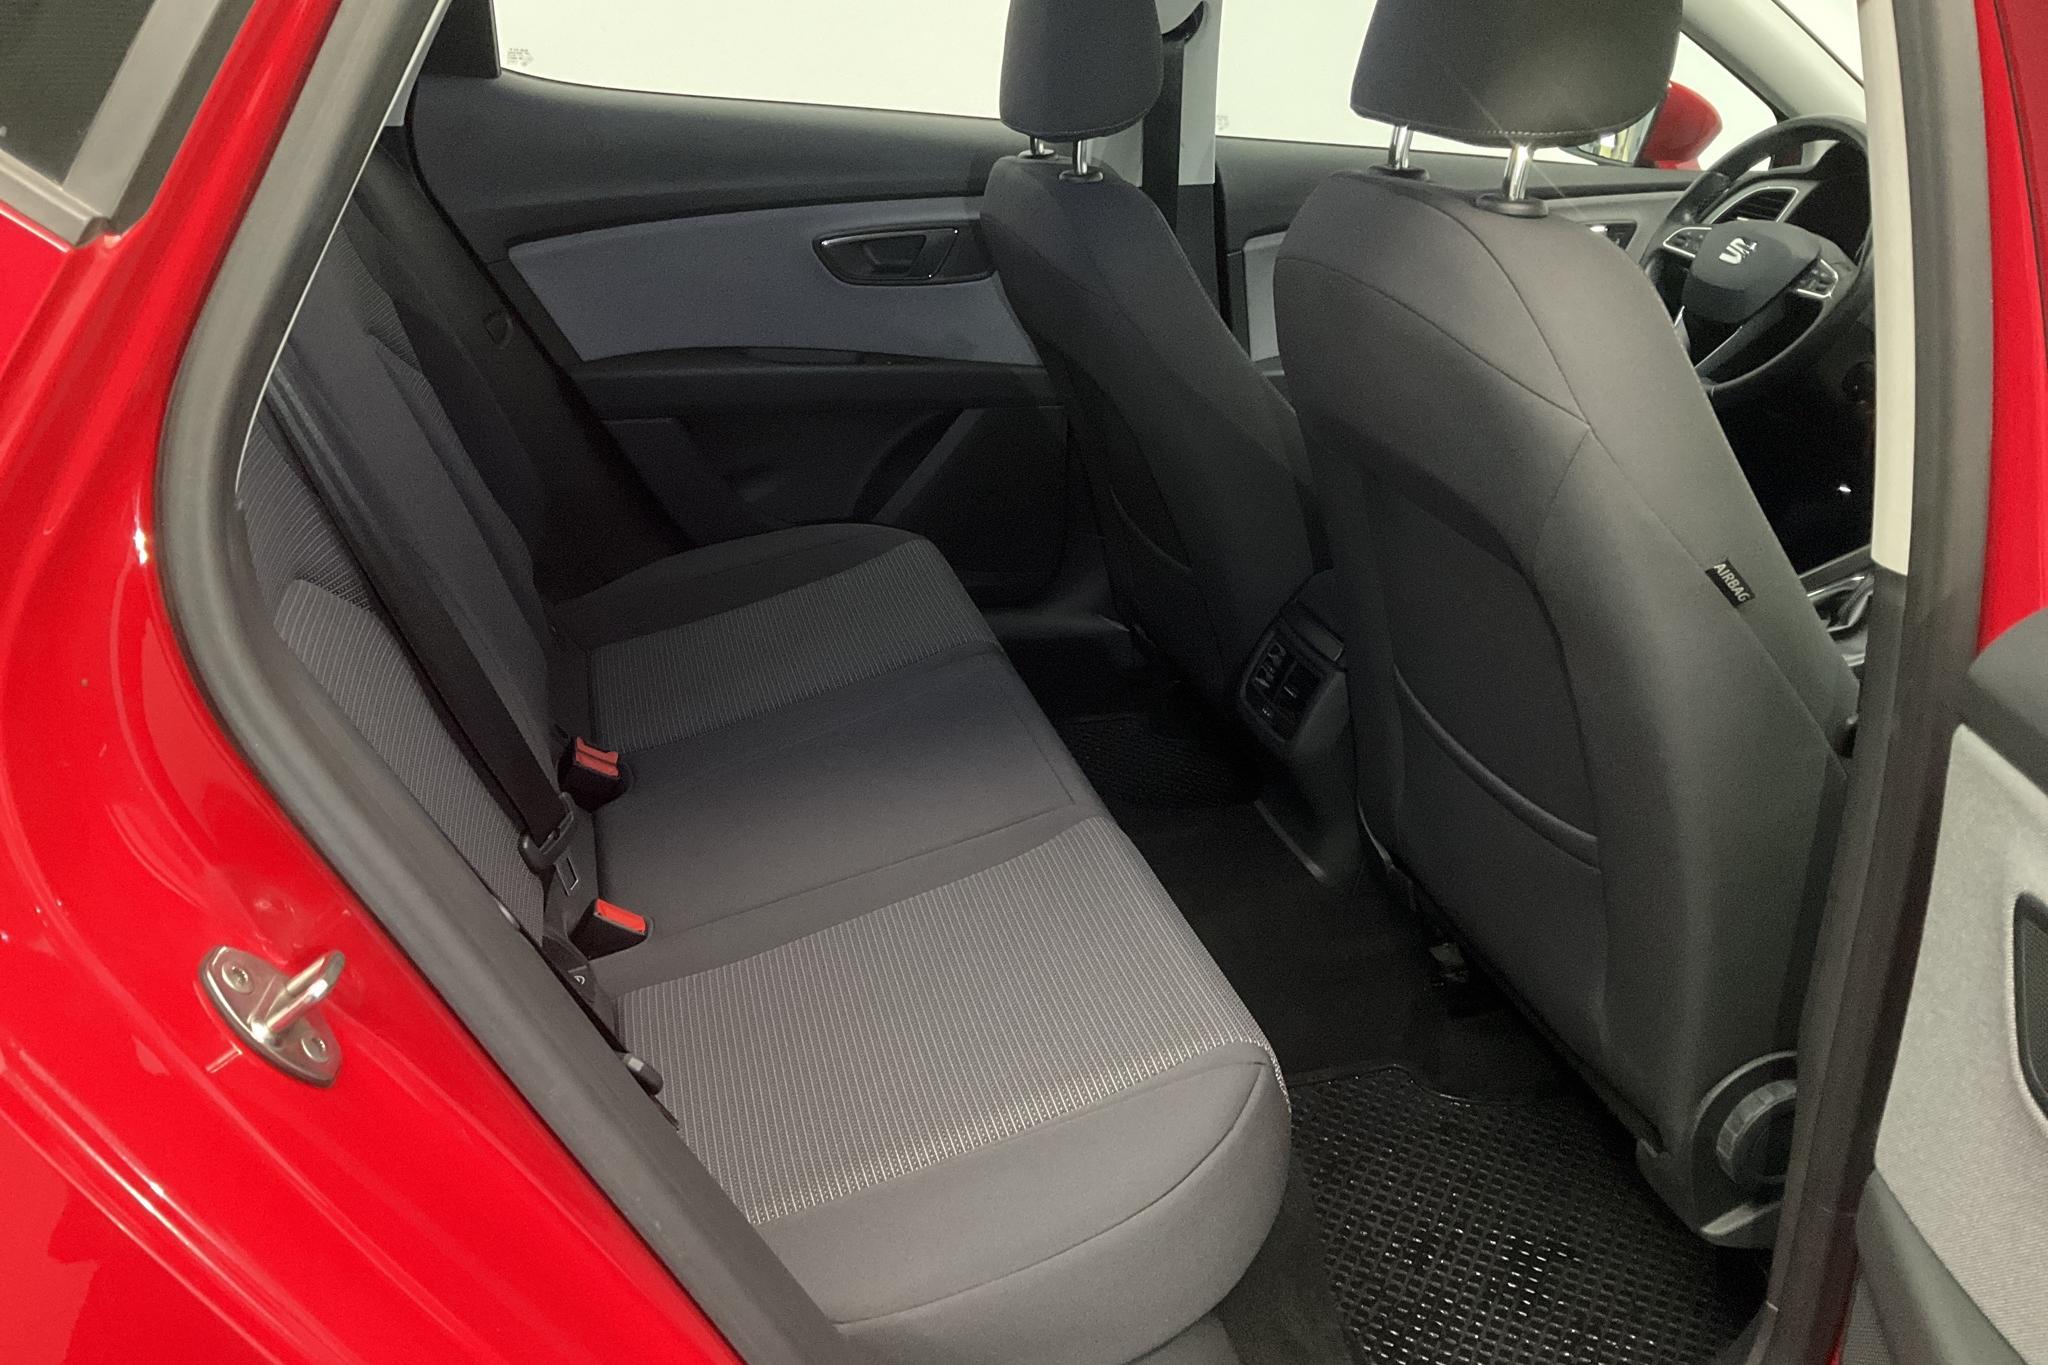 Seat Leon 1.6 TDI 5dr (115hk) - 77 530 km - Manual - red - 2020